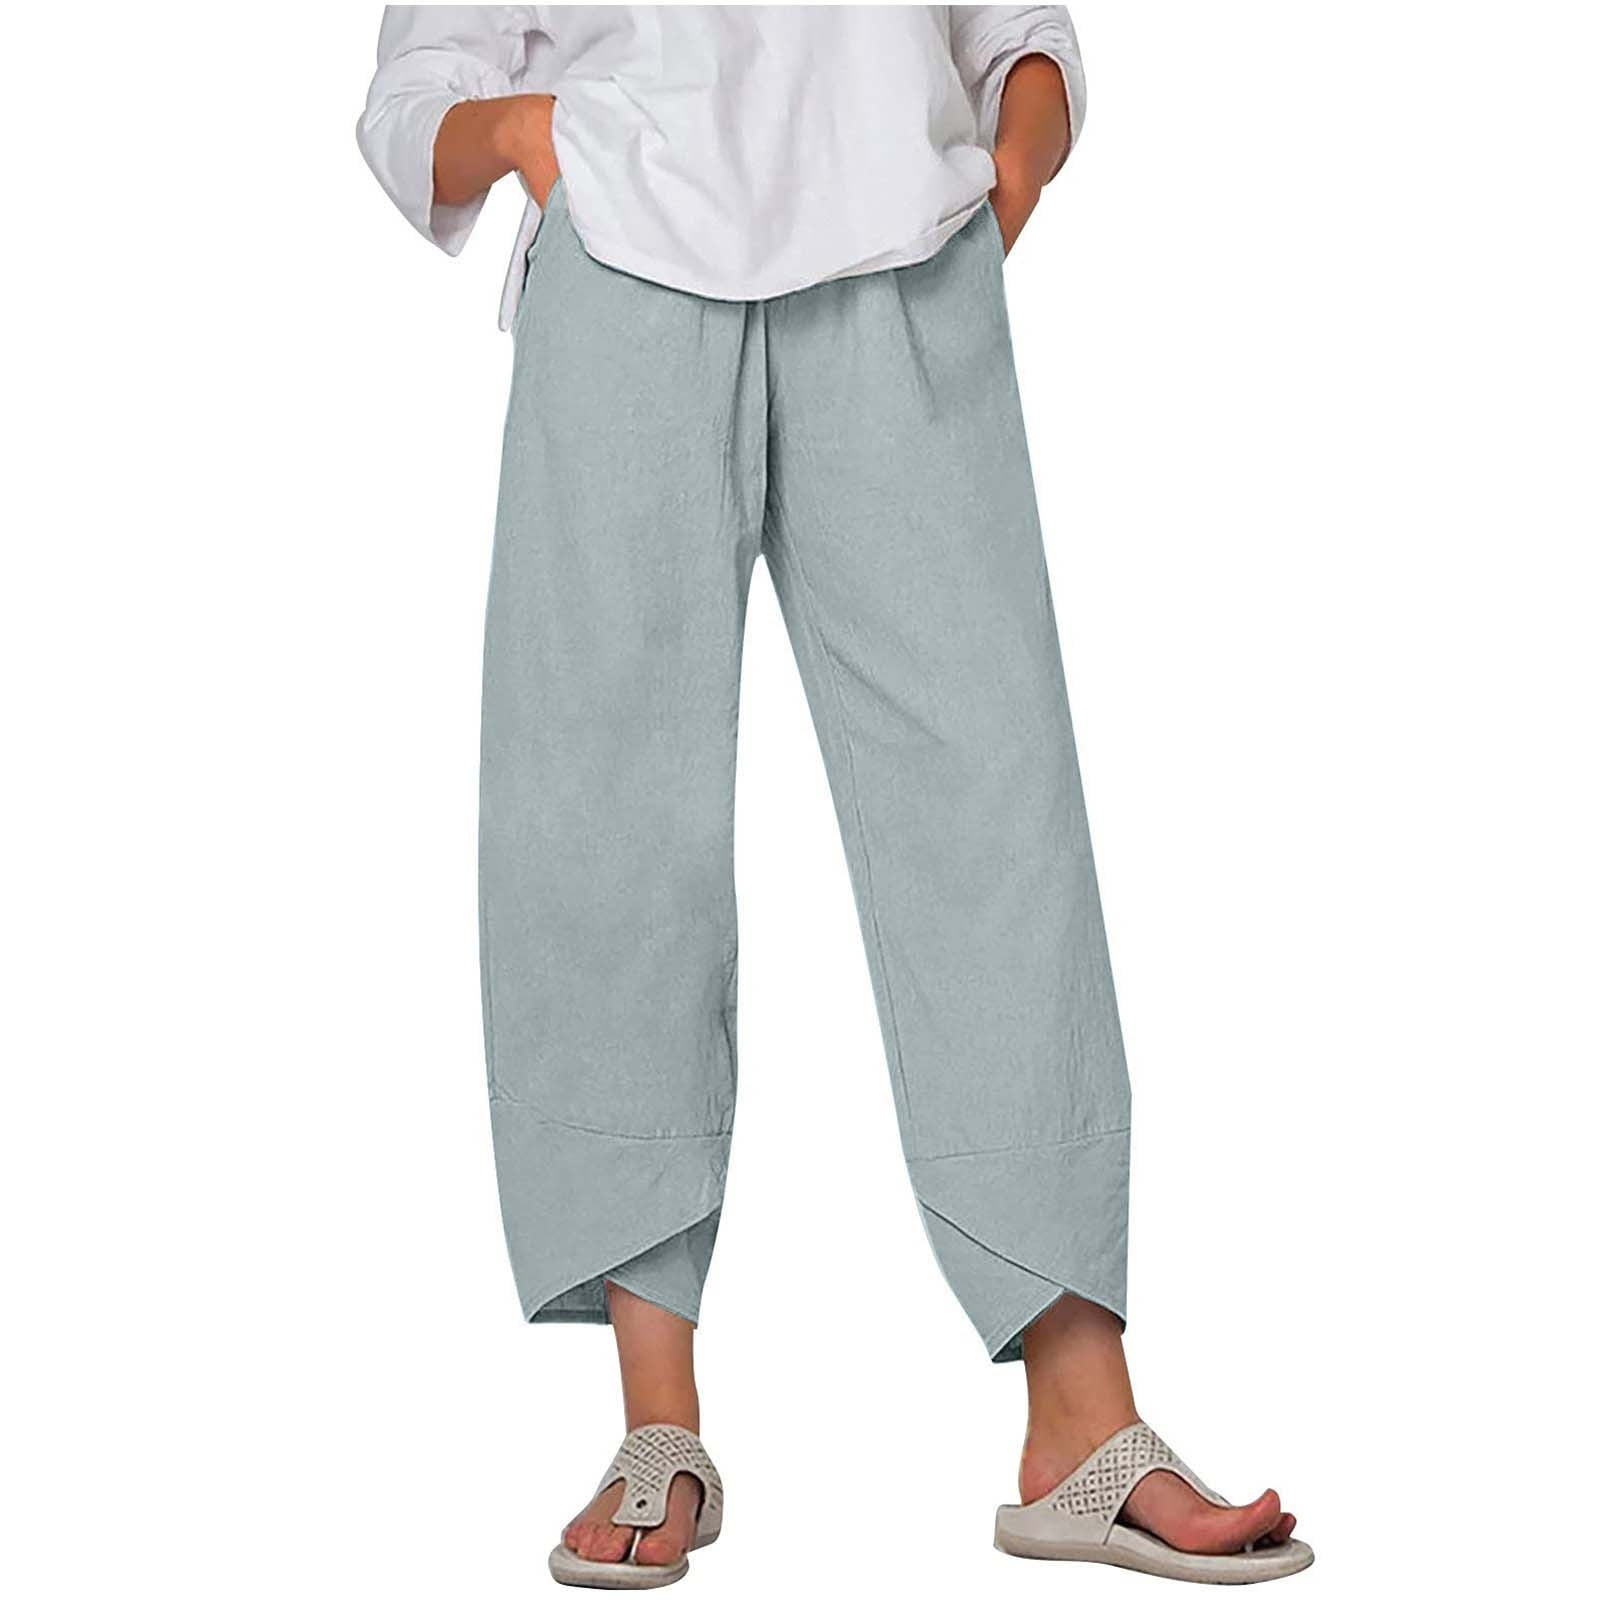 Stessotudo Linen Capri Pants for Women High Waist Summer Beach